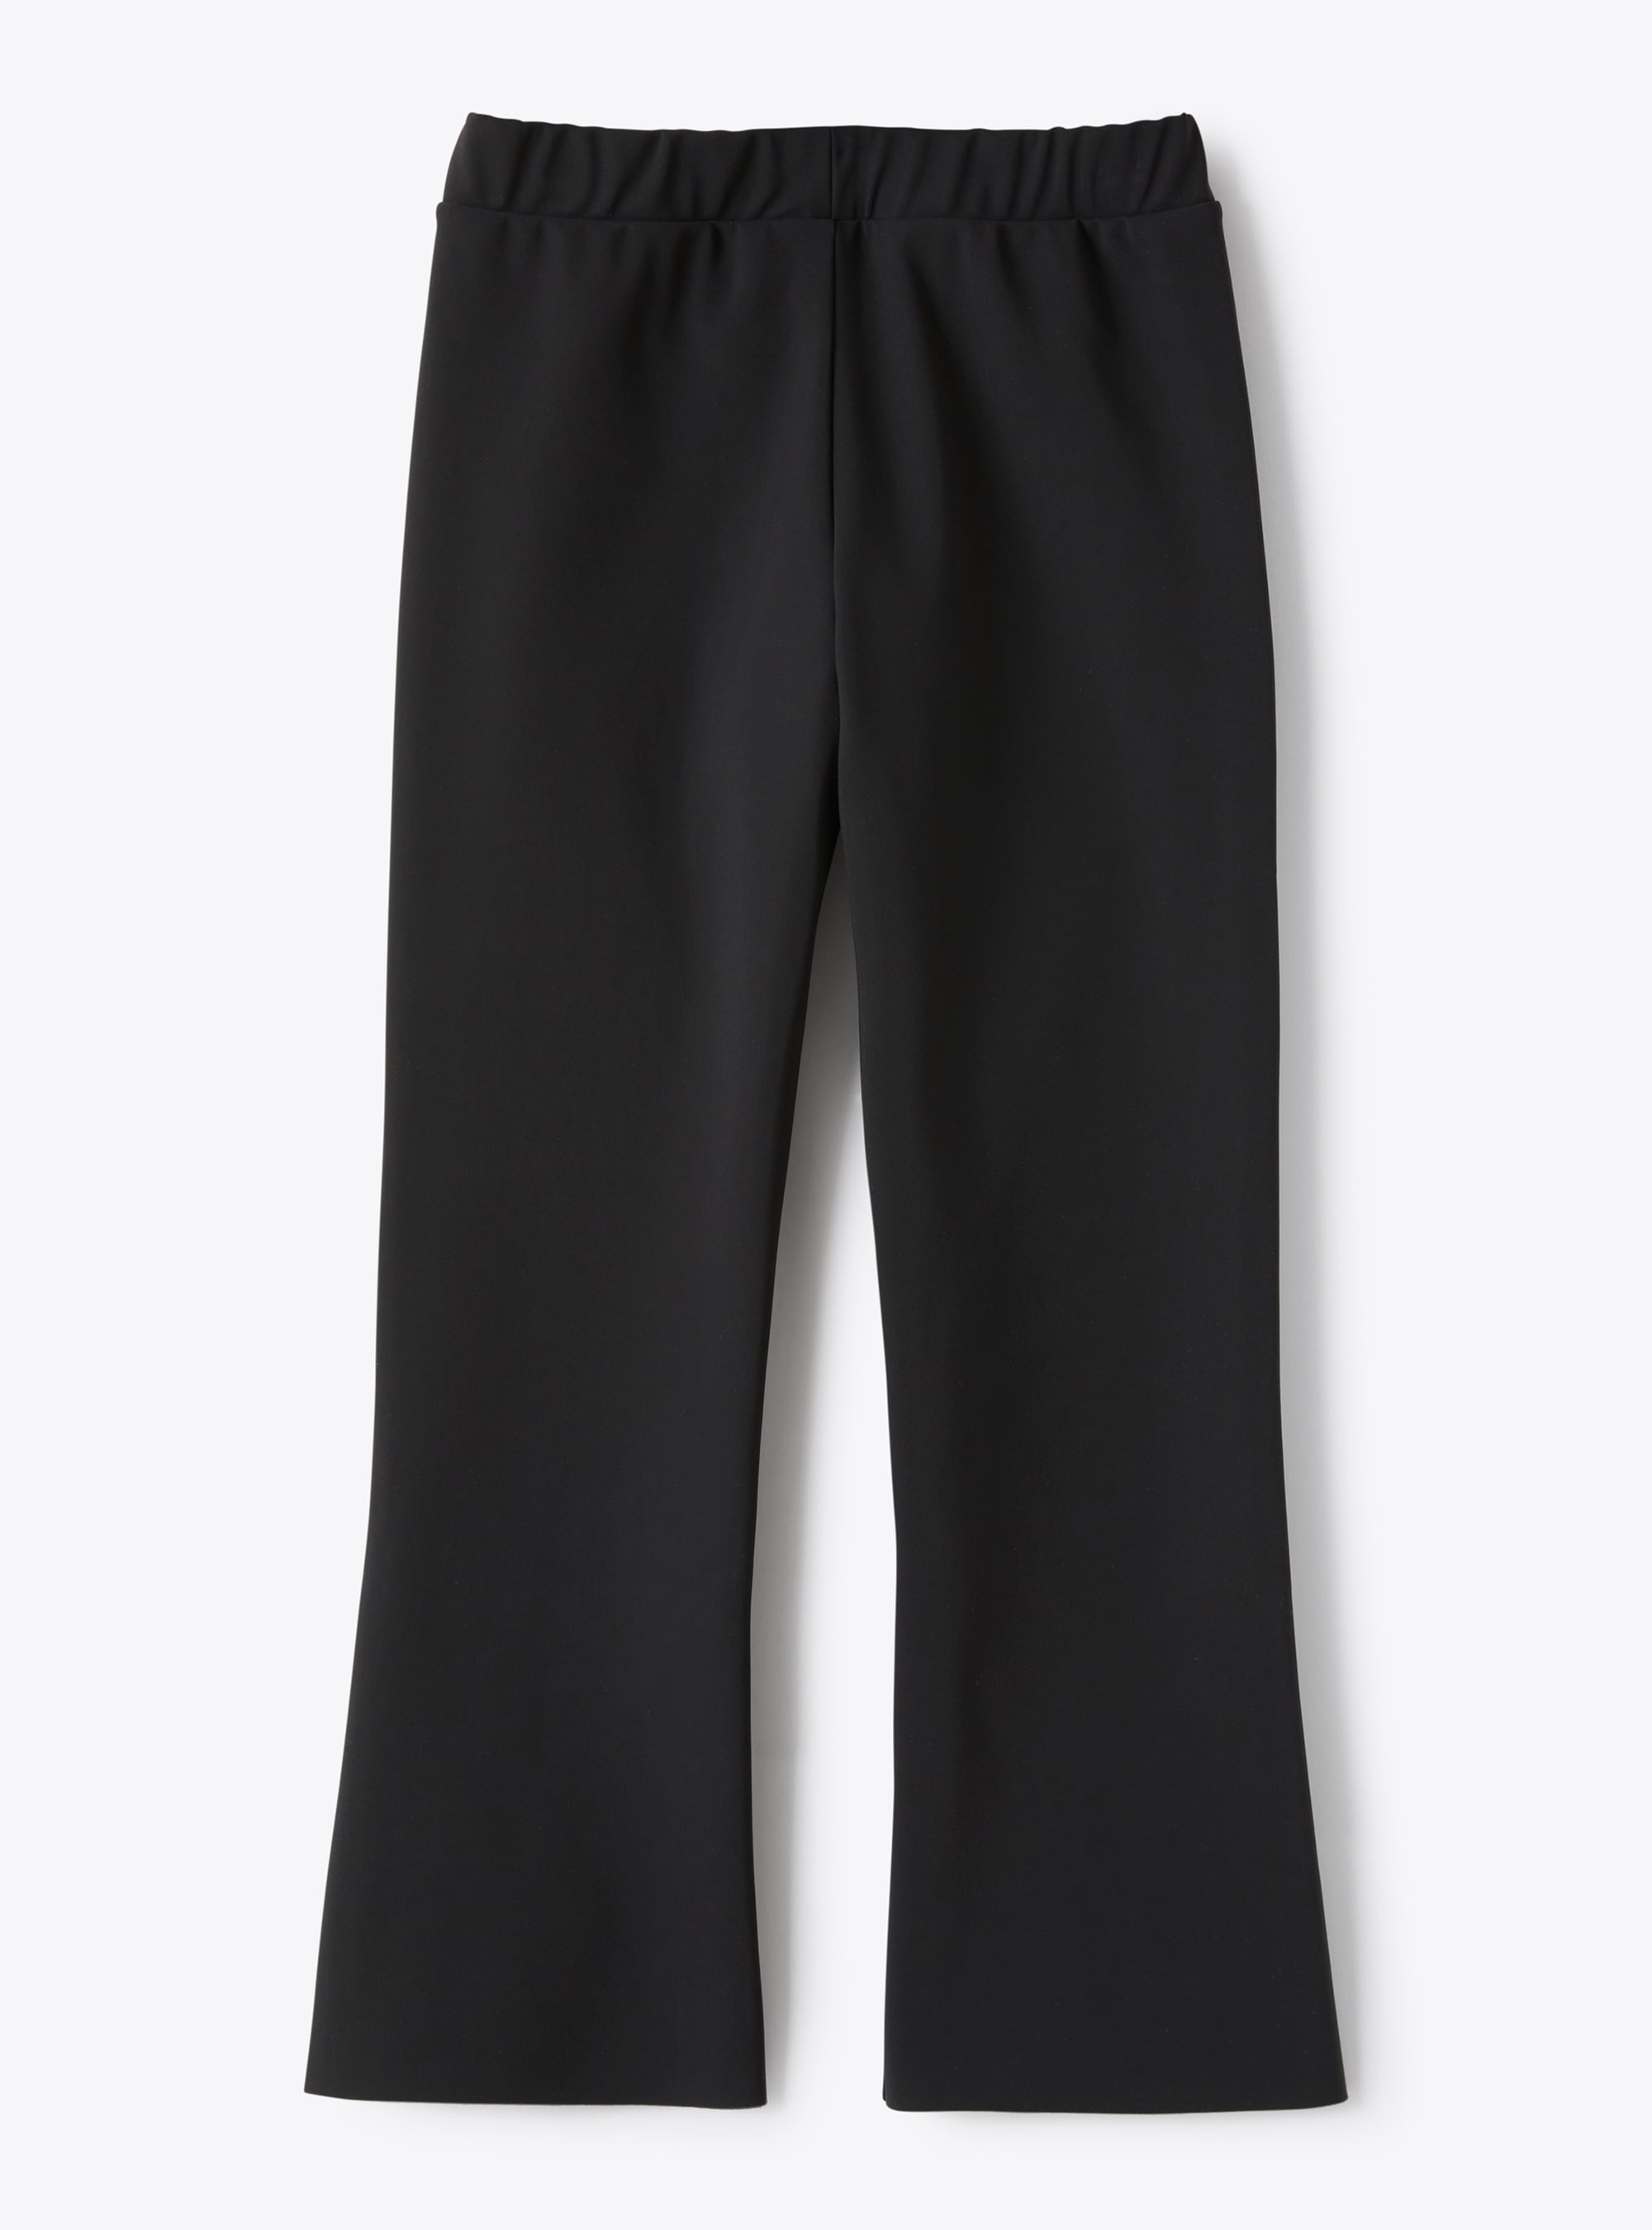 Trousers in black Sensitive® Fabrics material - Black | Il Gufo